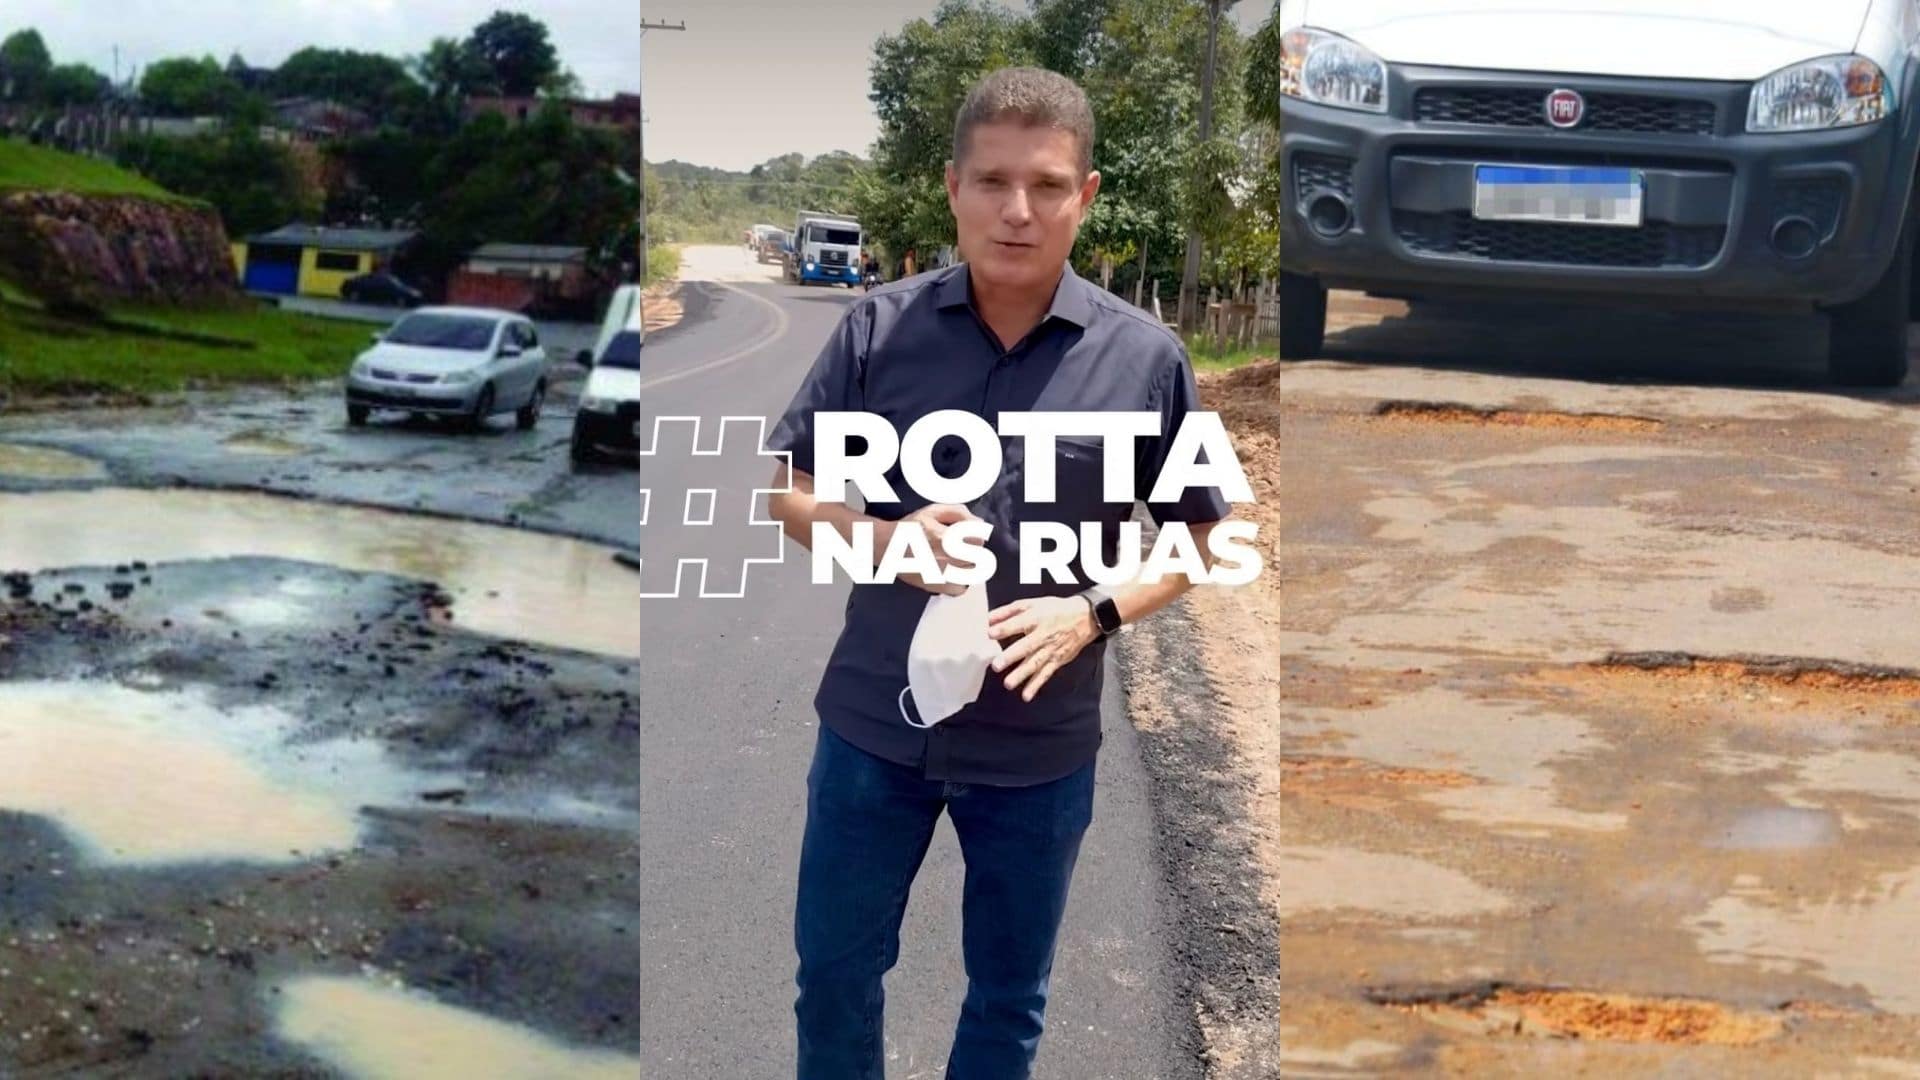 Rotta se exibe com ‘trabalho’ nas redes sociais, mas ignorou demanda dos moradores de Manaus